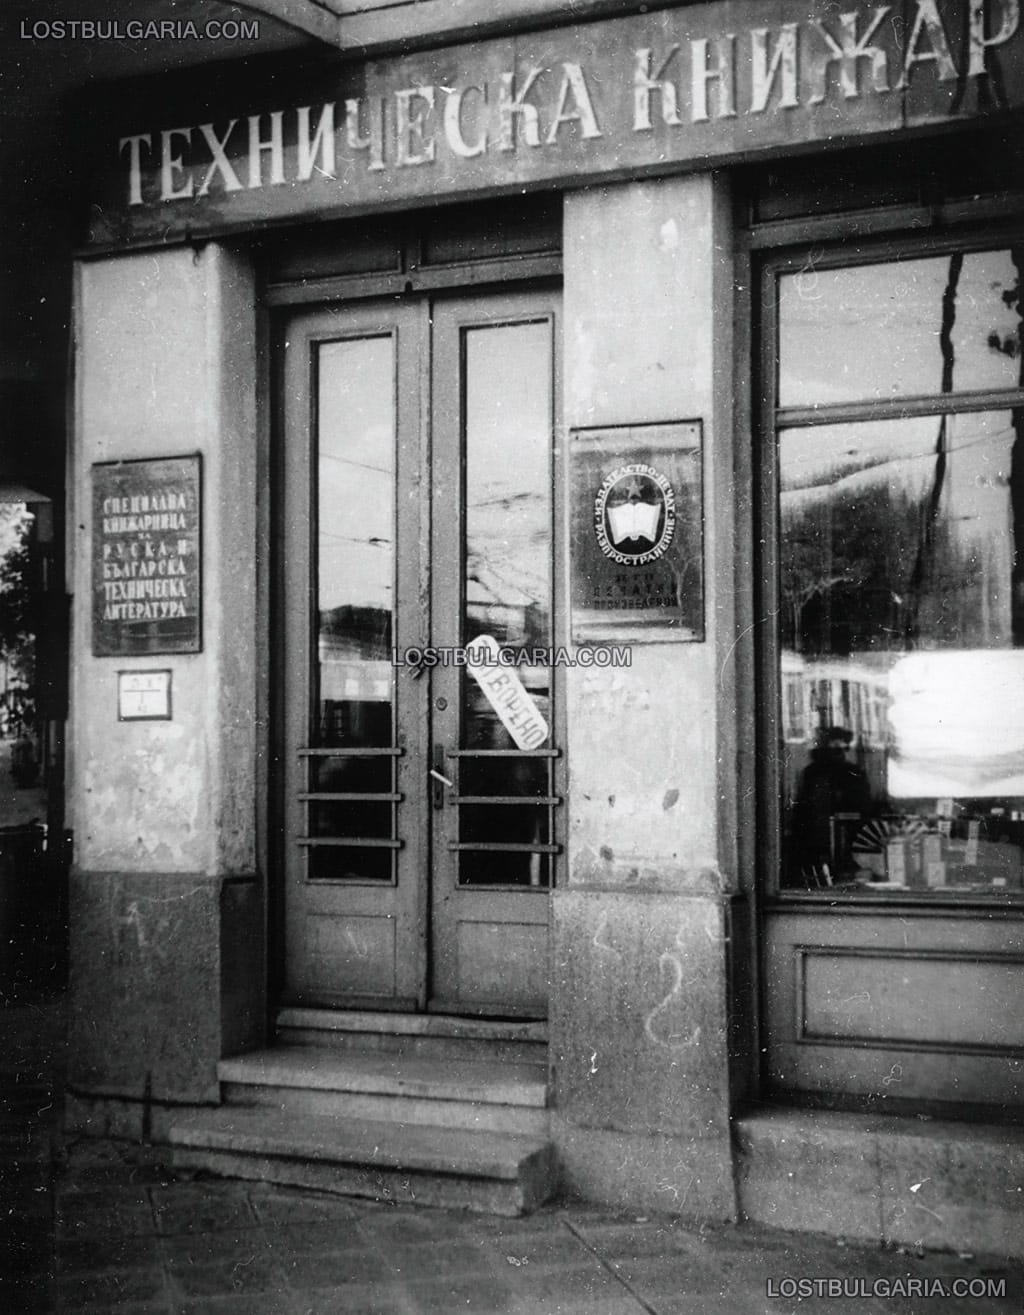 София, техническа книжарница на бул."Толбухин" (сега "Васил Левски"), началото на 60-те години на ХХ век